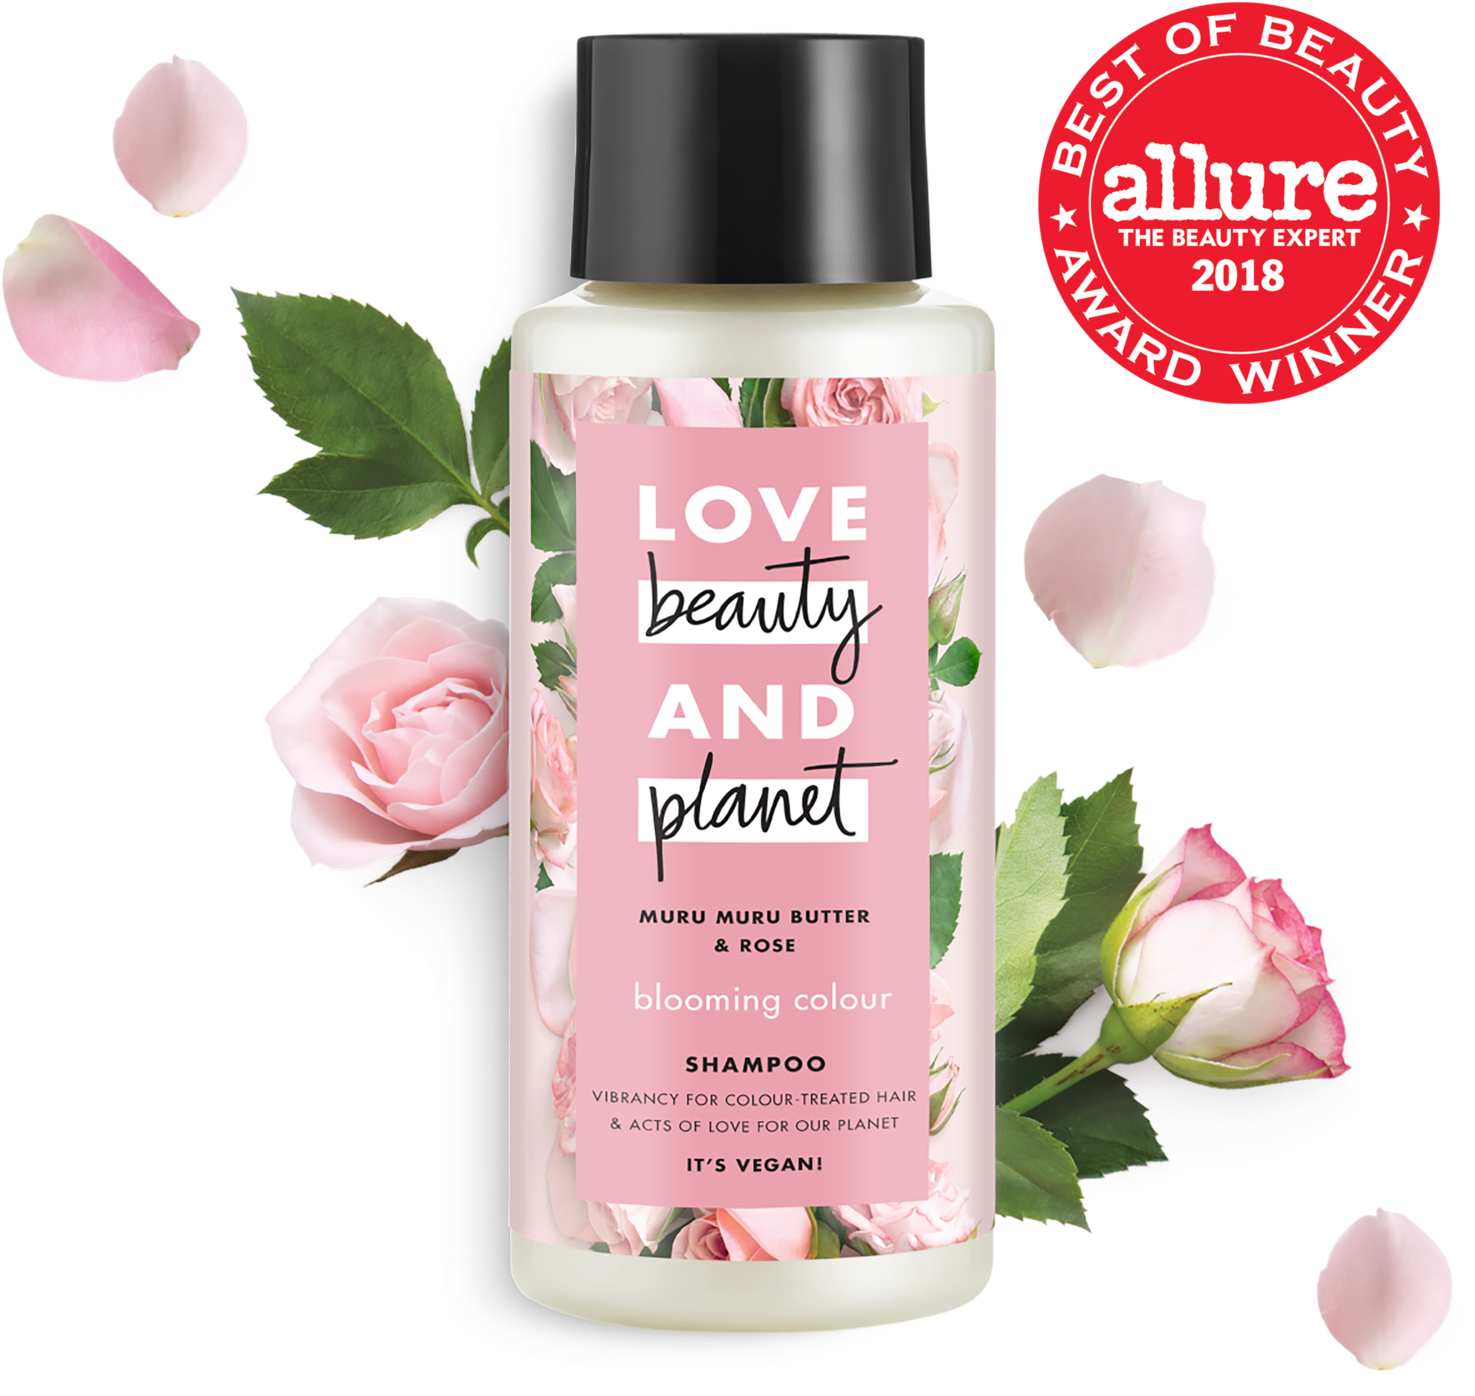 Love Beauty And Planet Murumuru Butter & Rose Shampoo - Love Beauty And Planet Magic Mask (1500x1500), Png Download